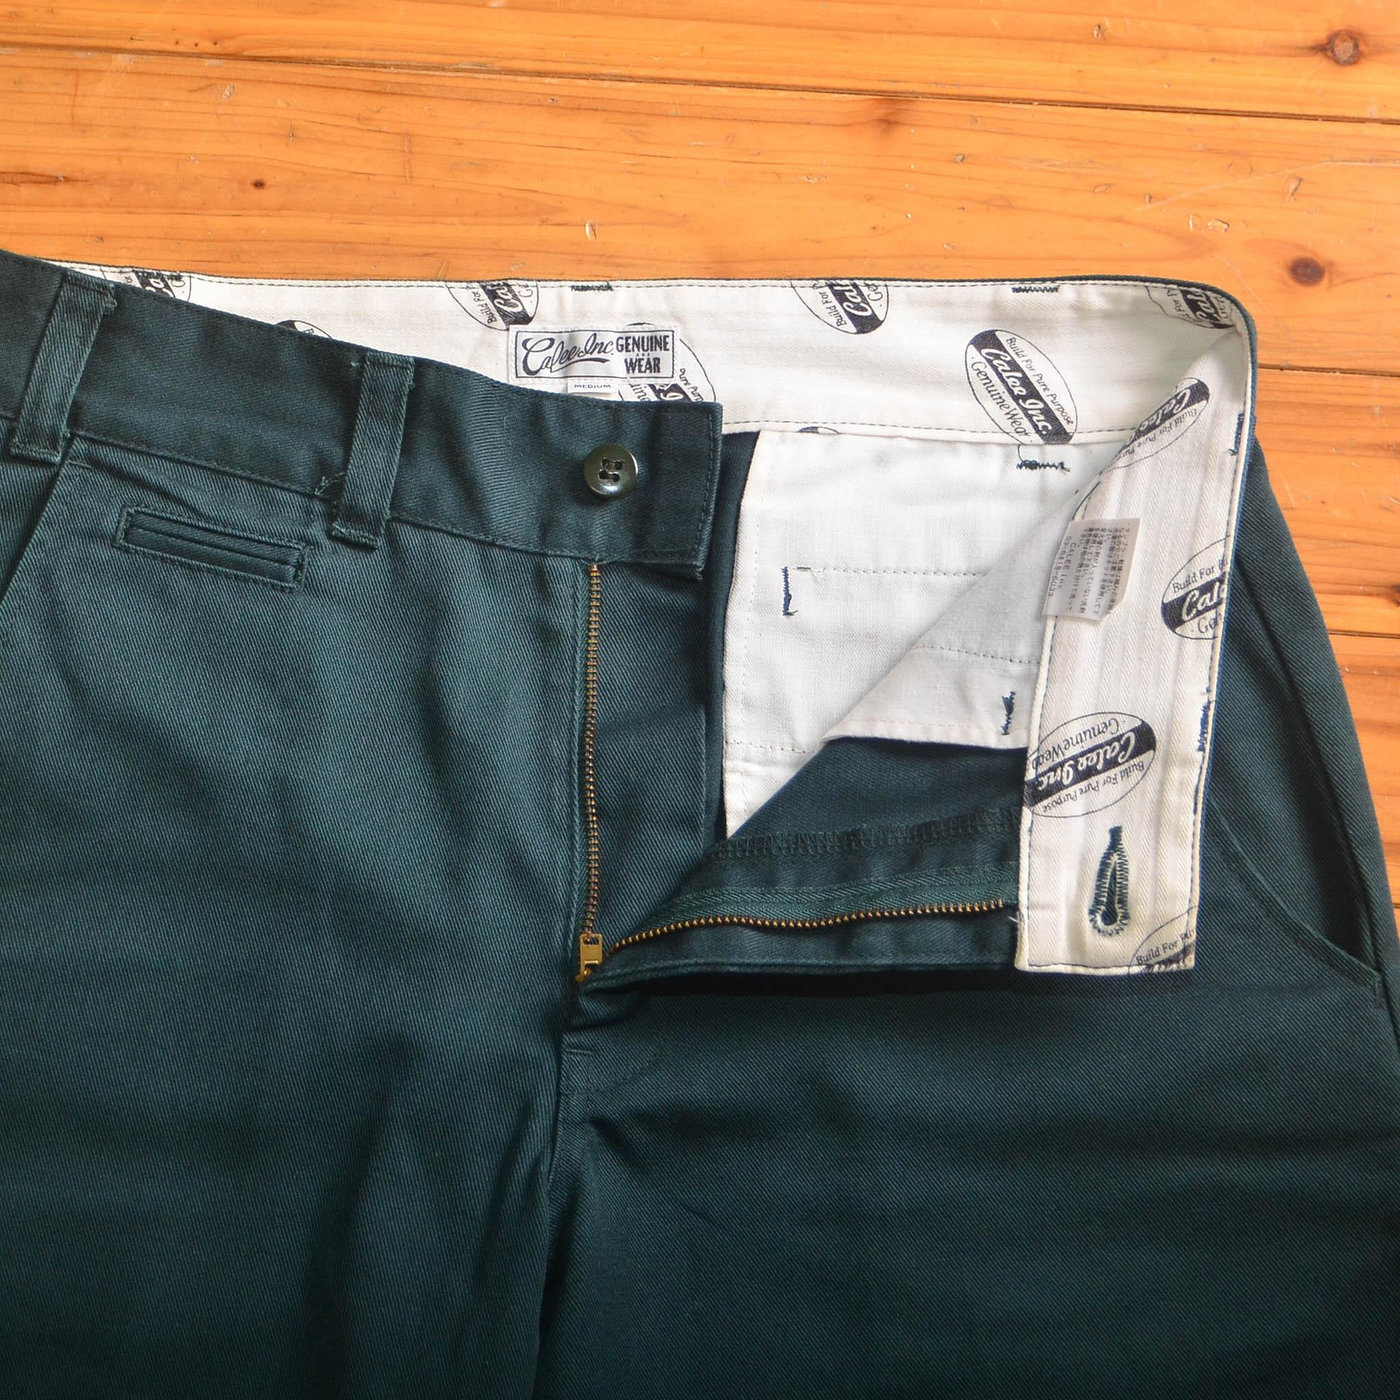 日本CALEE 綠色休閒短褲極新品 M號一元起標! | Yahoo奇摩拍賣